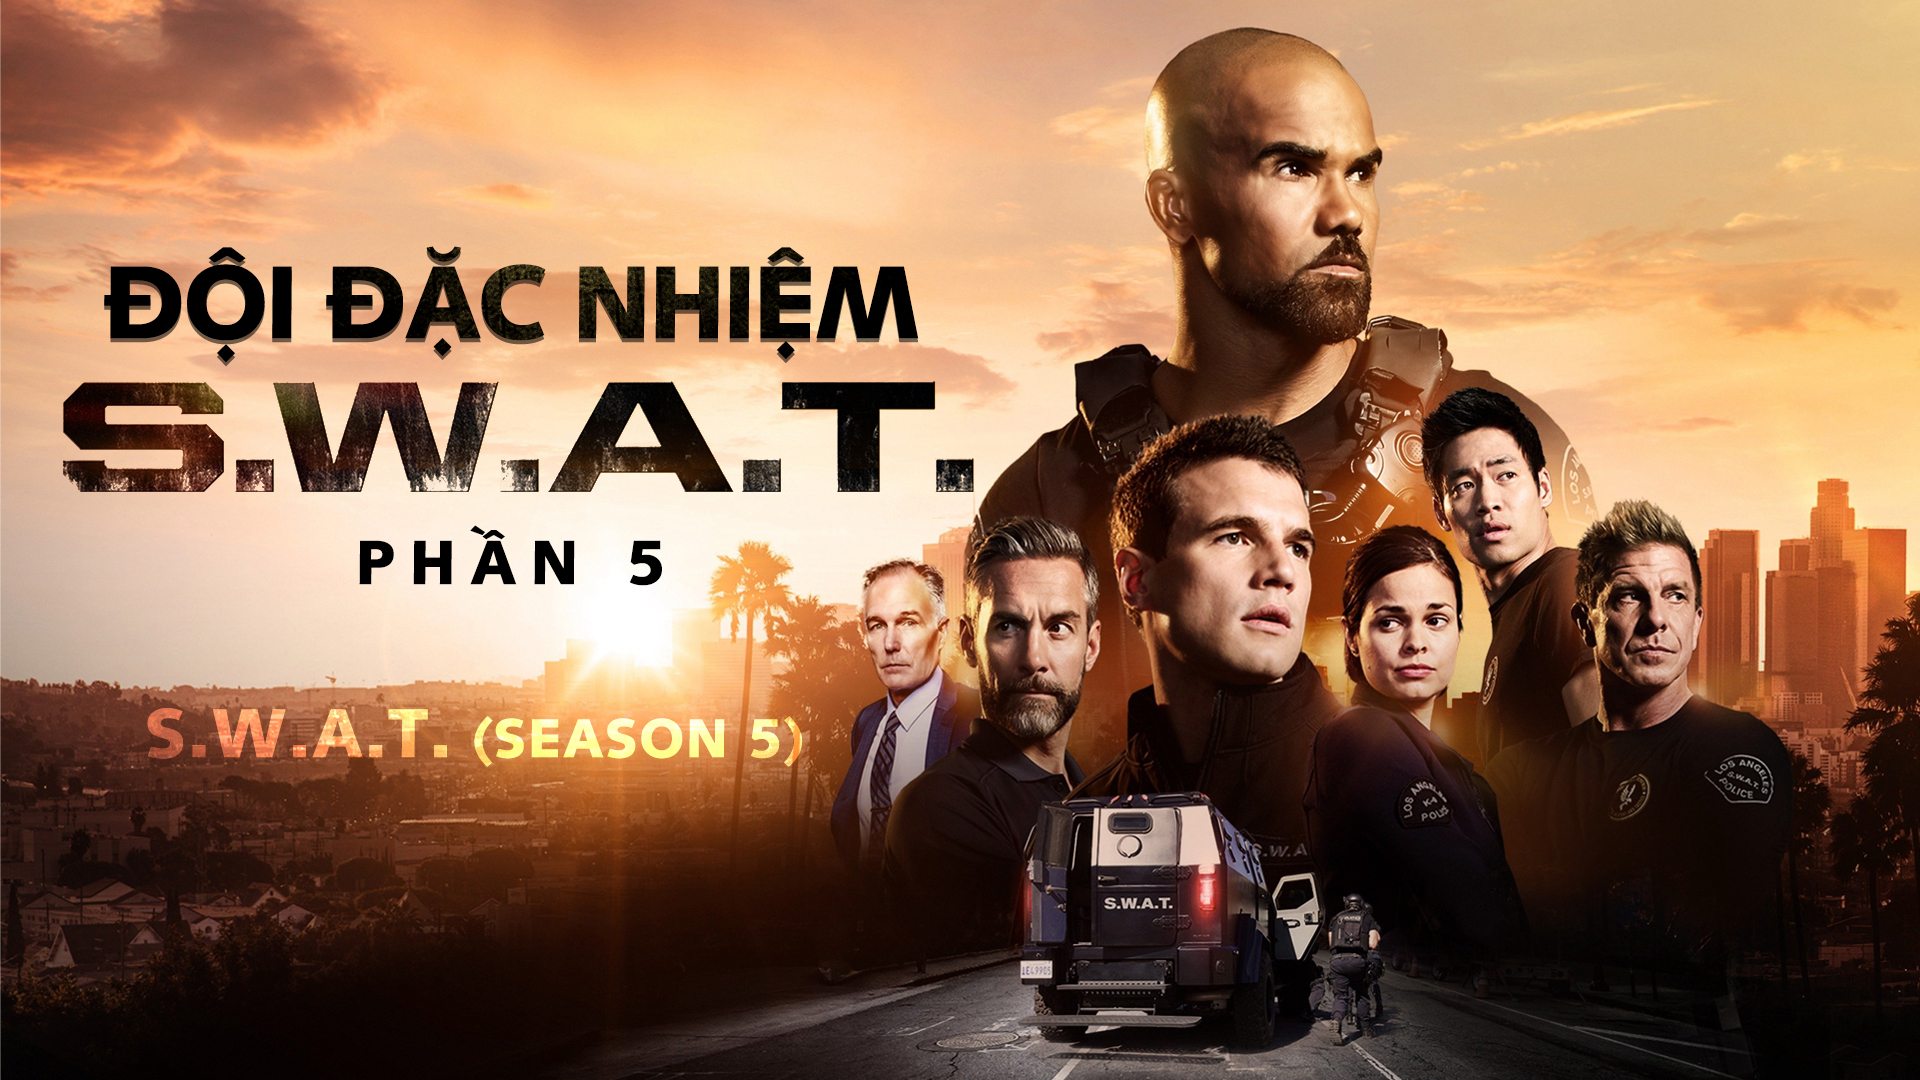 Đội Đặc Nhiệm SWAT (Phần 5) S.W.A.T. (Season 5)